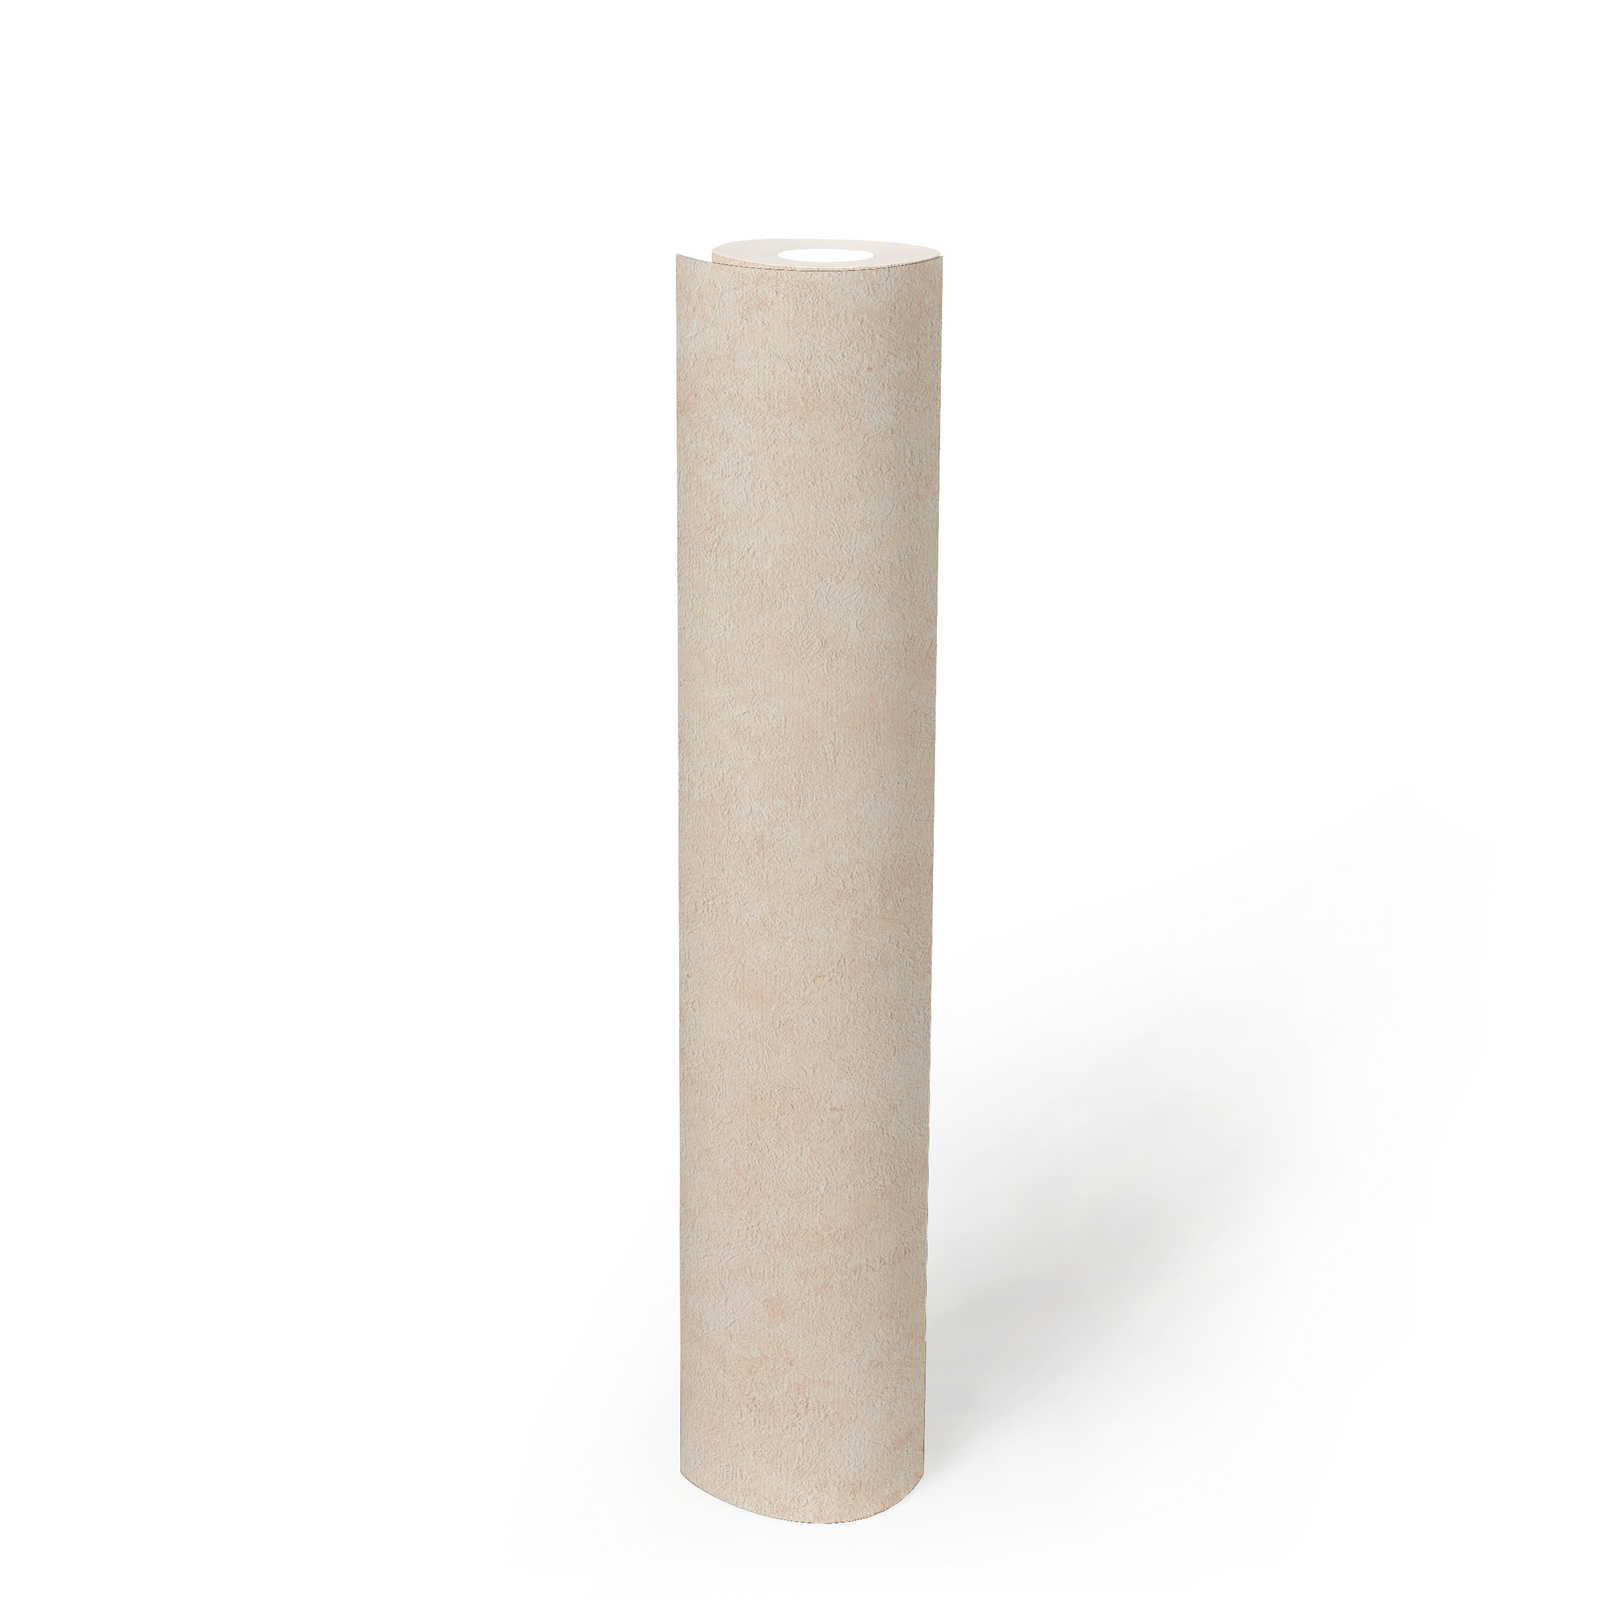             Papier peint structuré dans des tons unis subtils - crème, beige
        